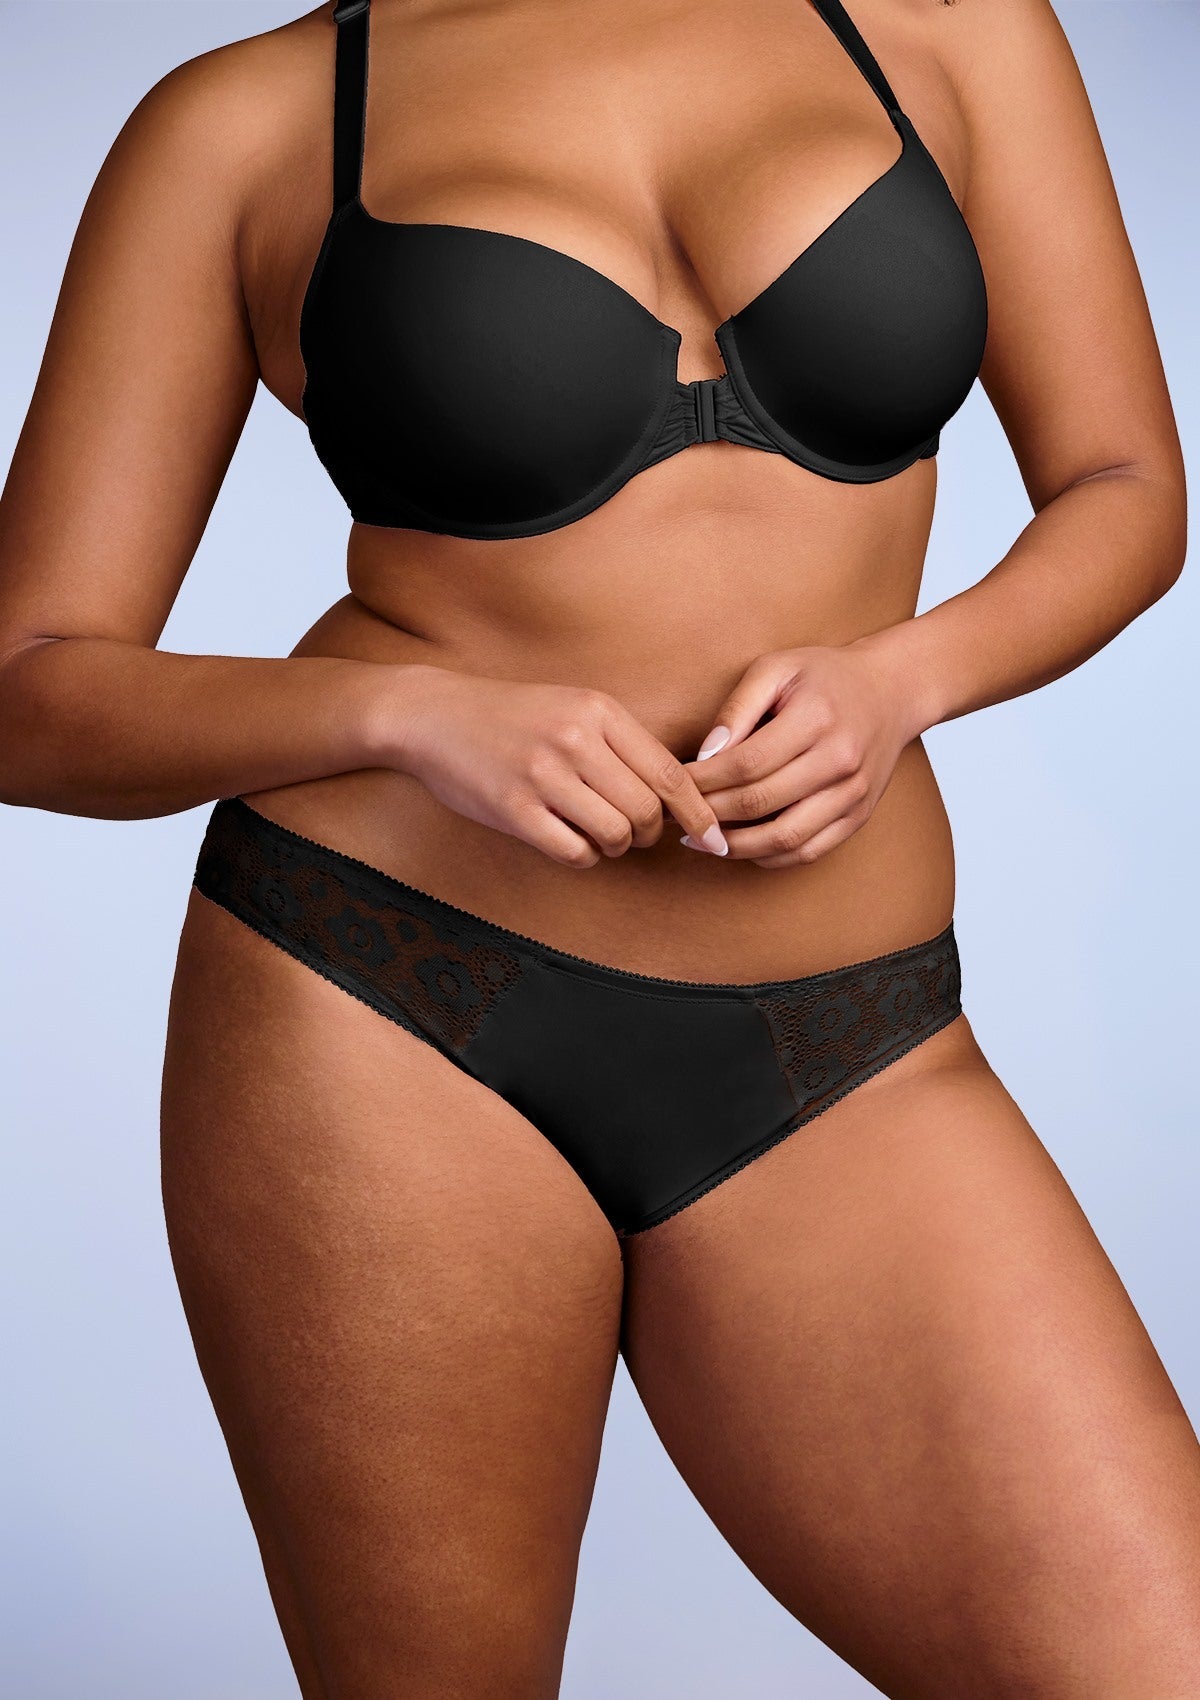 HSIA Serena Comfy Lace Trim Stylish Bikini Underwear - XXXL / Black